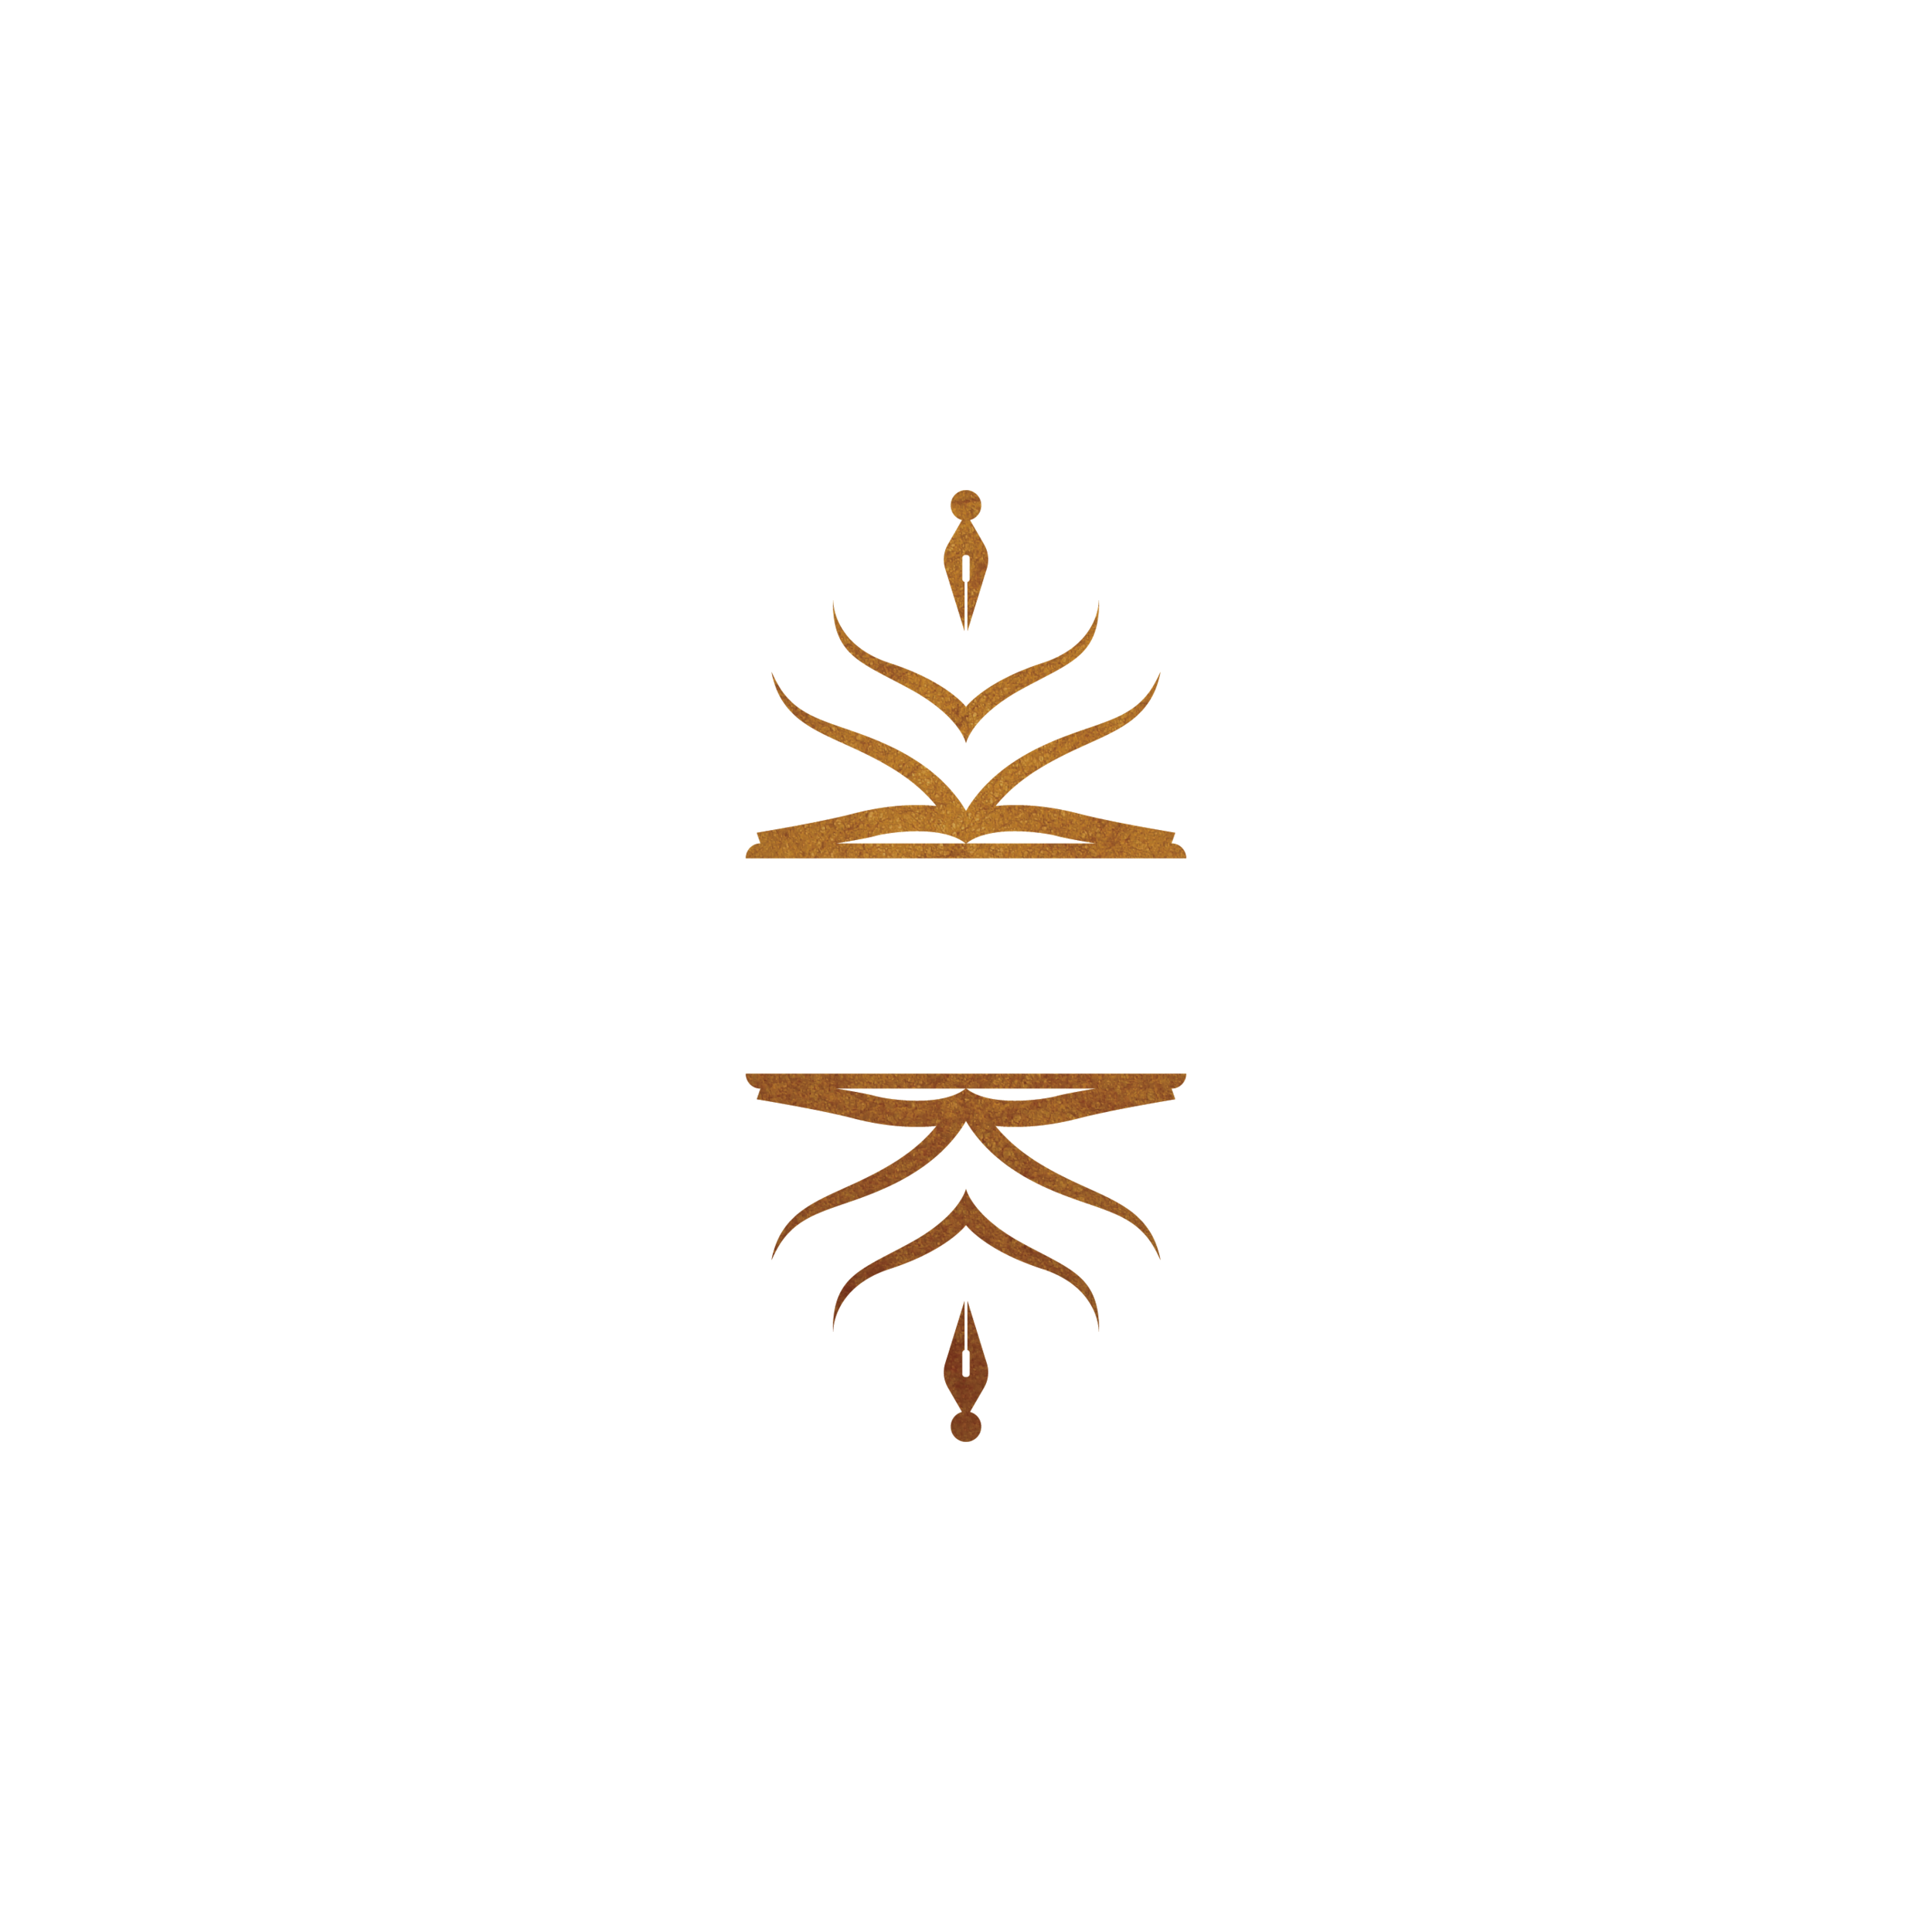 Kristina Lao